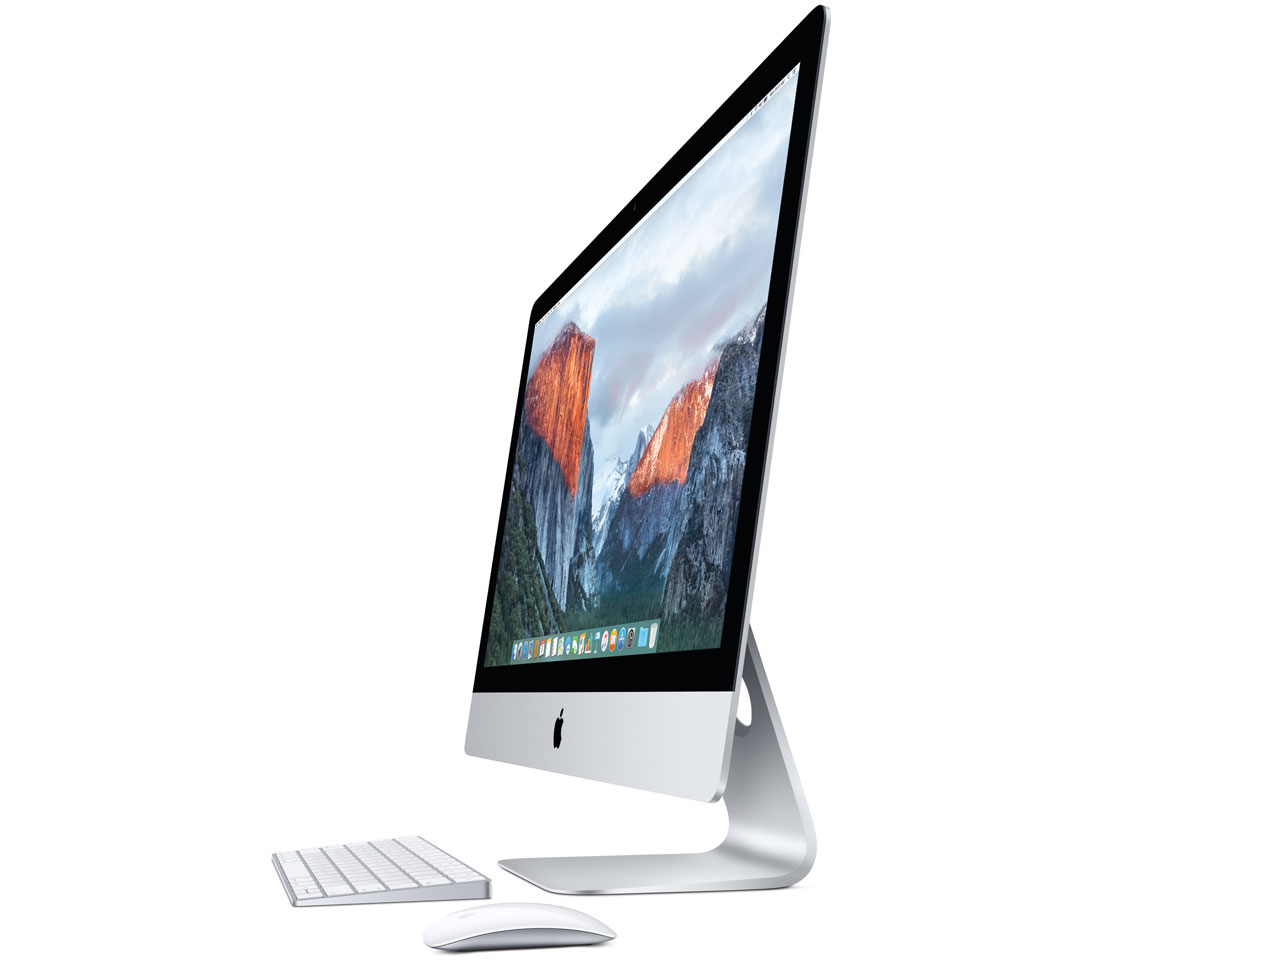 中古iMac Retina 5K intel Core i5 3.2GHz(4コア) 27インチ Silver OS10.14 起動モデル (2015/10)MK462J/A